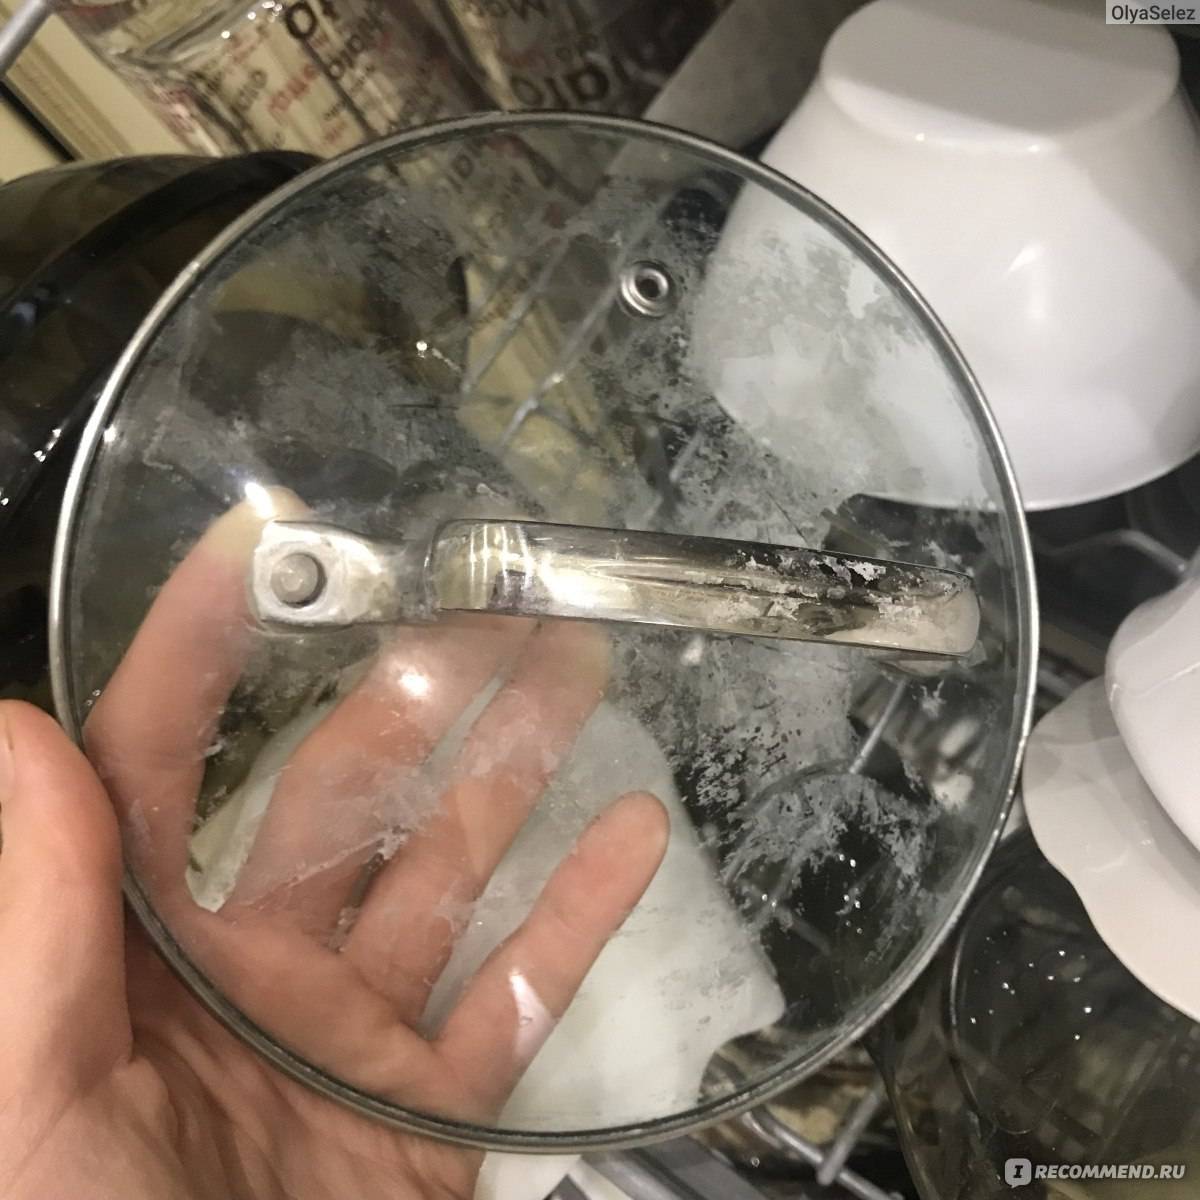 Белый налет в посудомоечной машине: причины, как избавиться